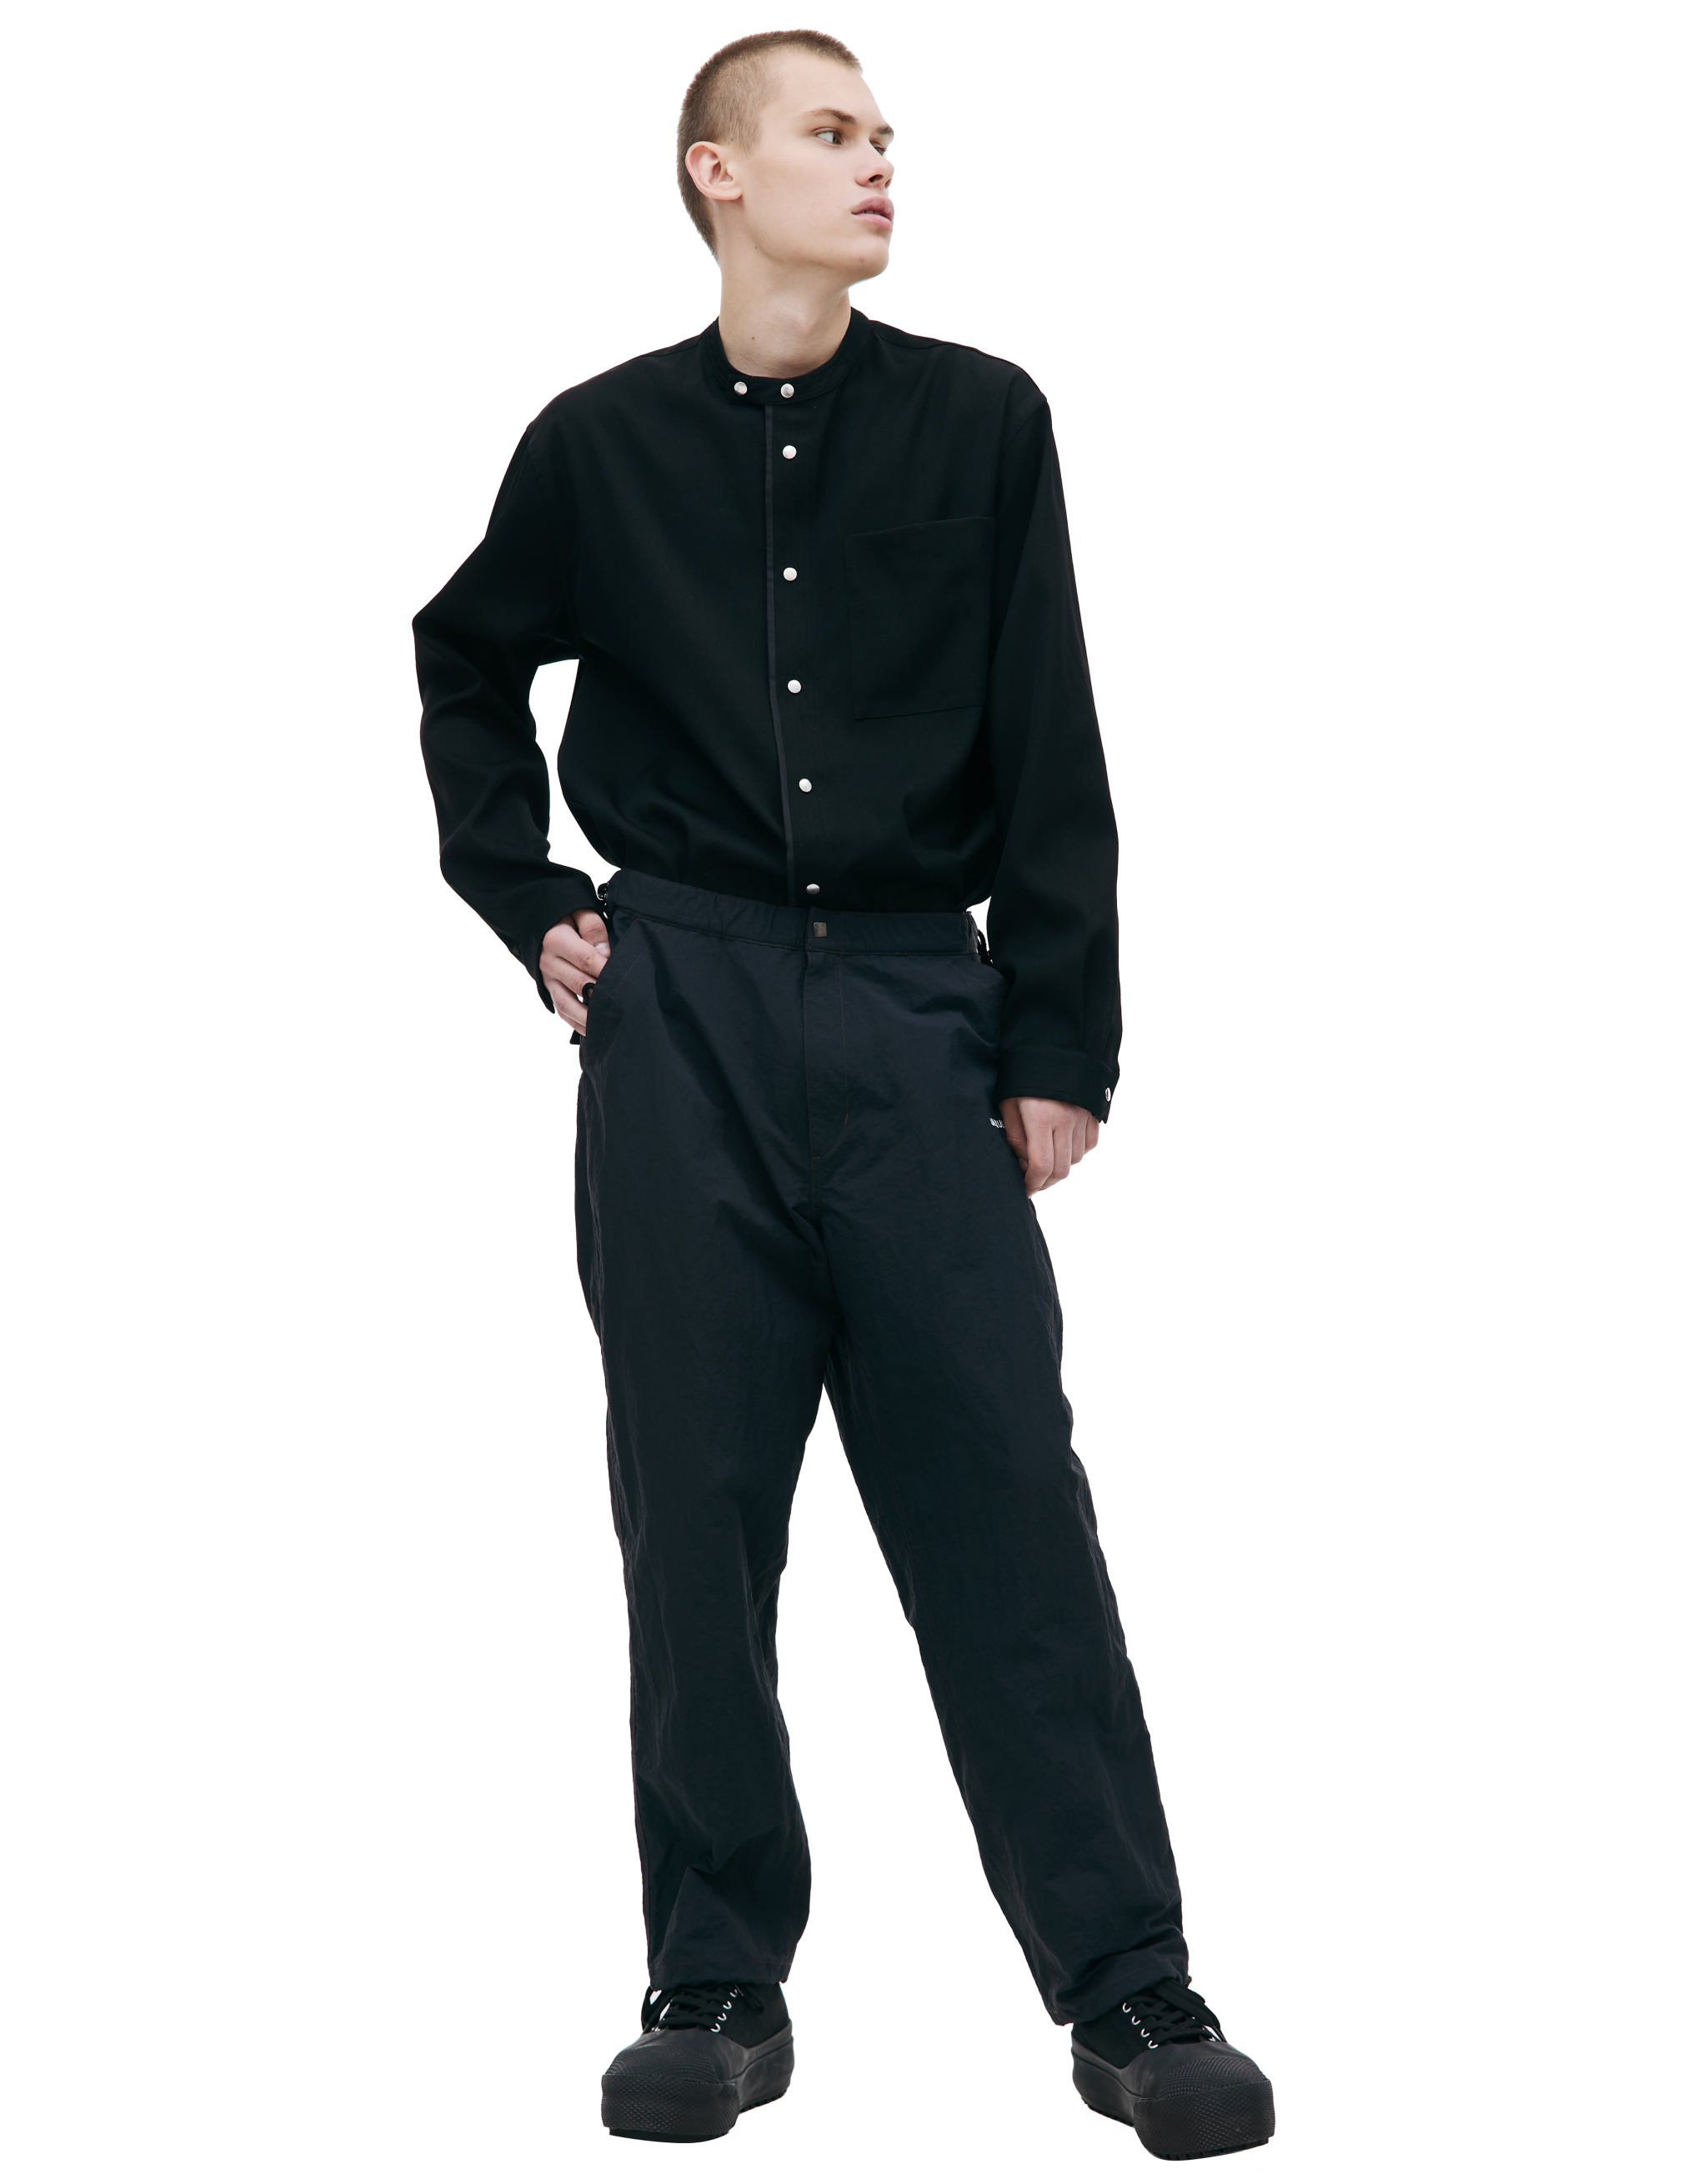 Нейлоновые брюки с вышивкой логотипа CAERUS PT-001/BLACK, размер 2